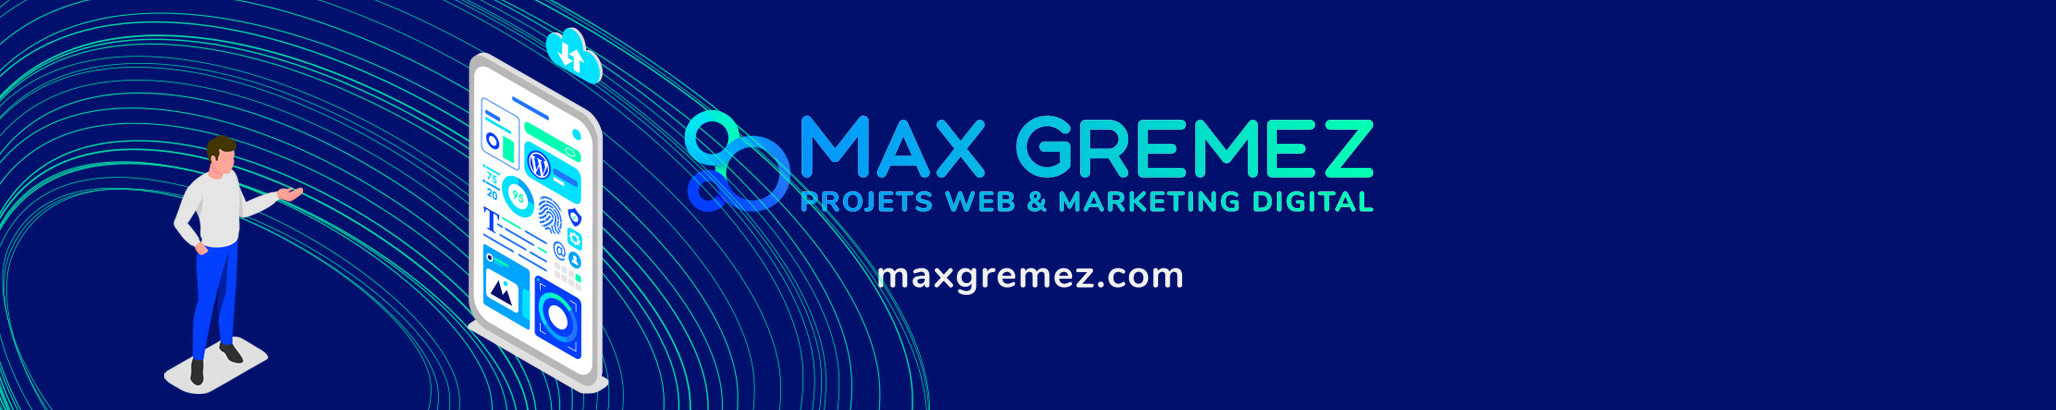 Max Gremez's profile banner